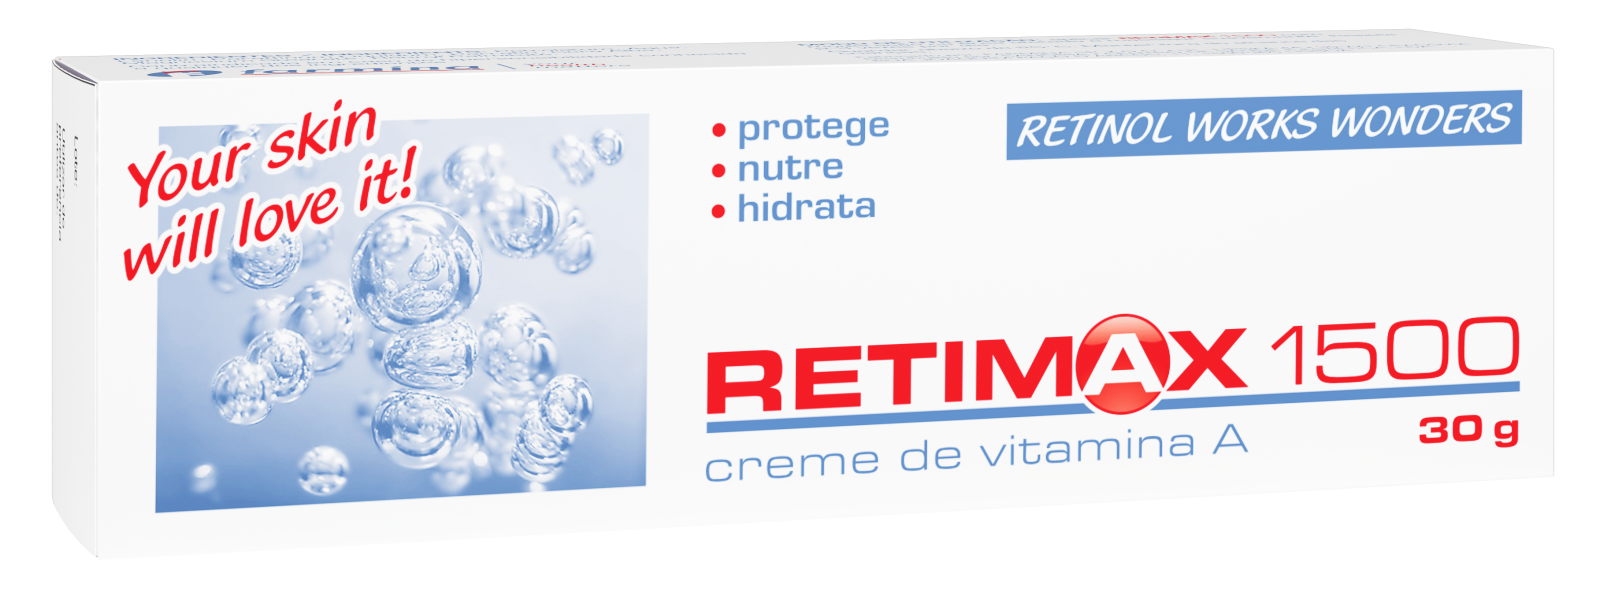 Retimax 1500